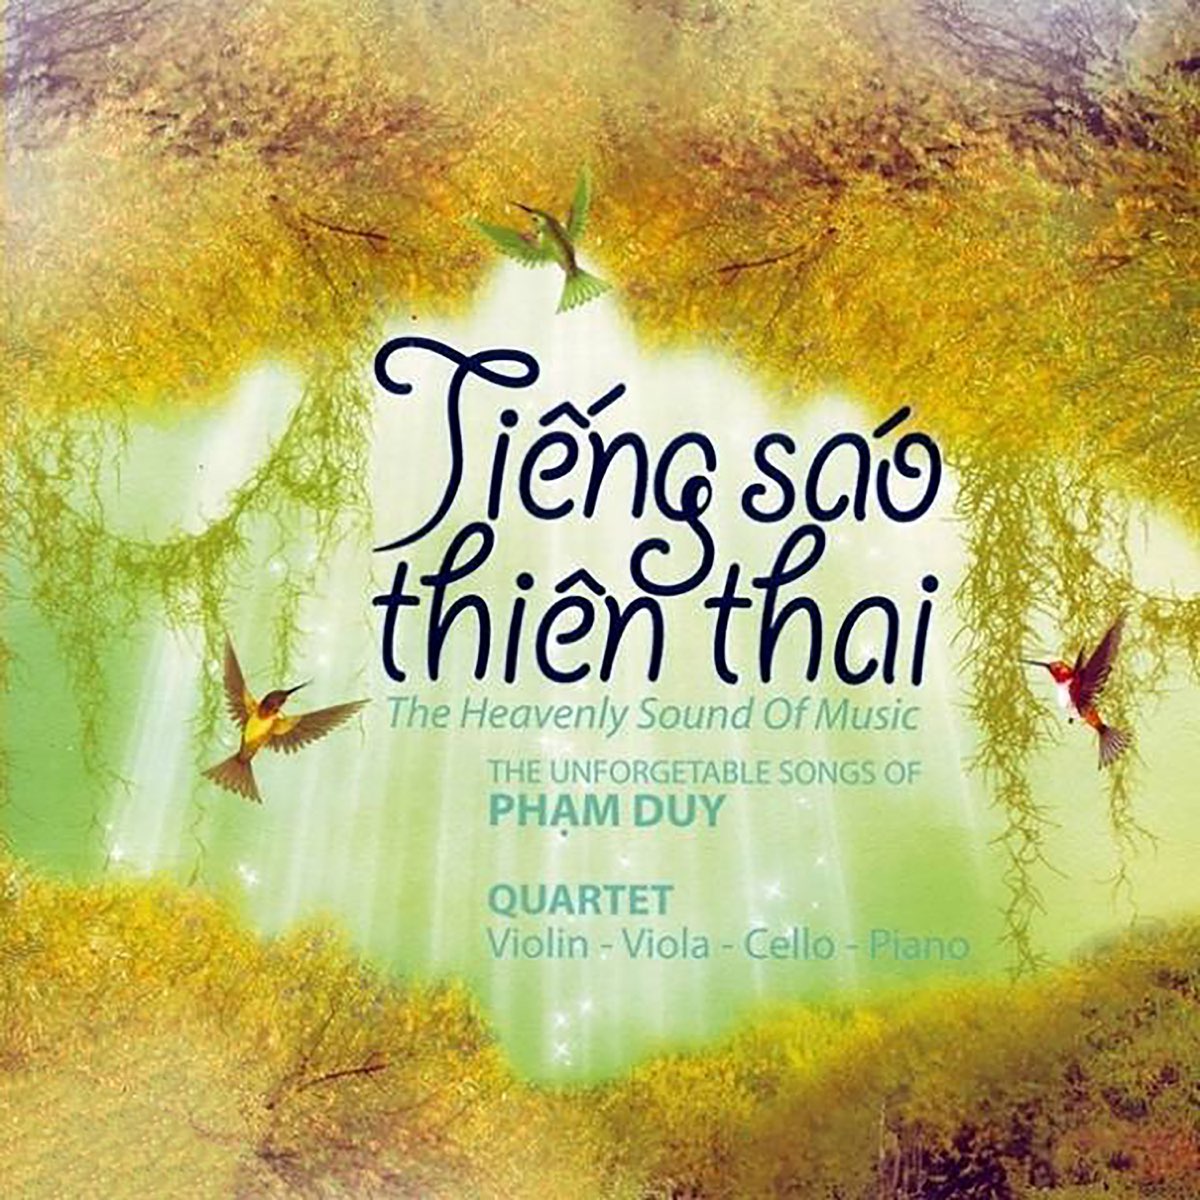 Tiếng Sáo Thiên Thai (Hòa Tấu) by Hòa Tấu on Apple Music